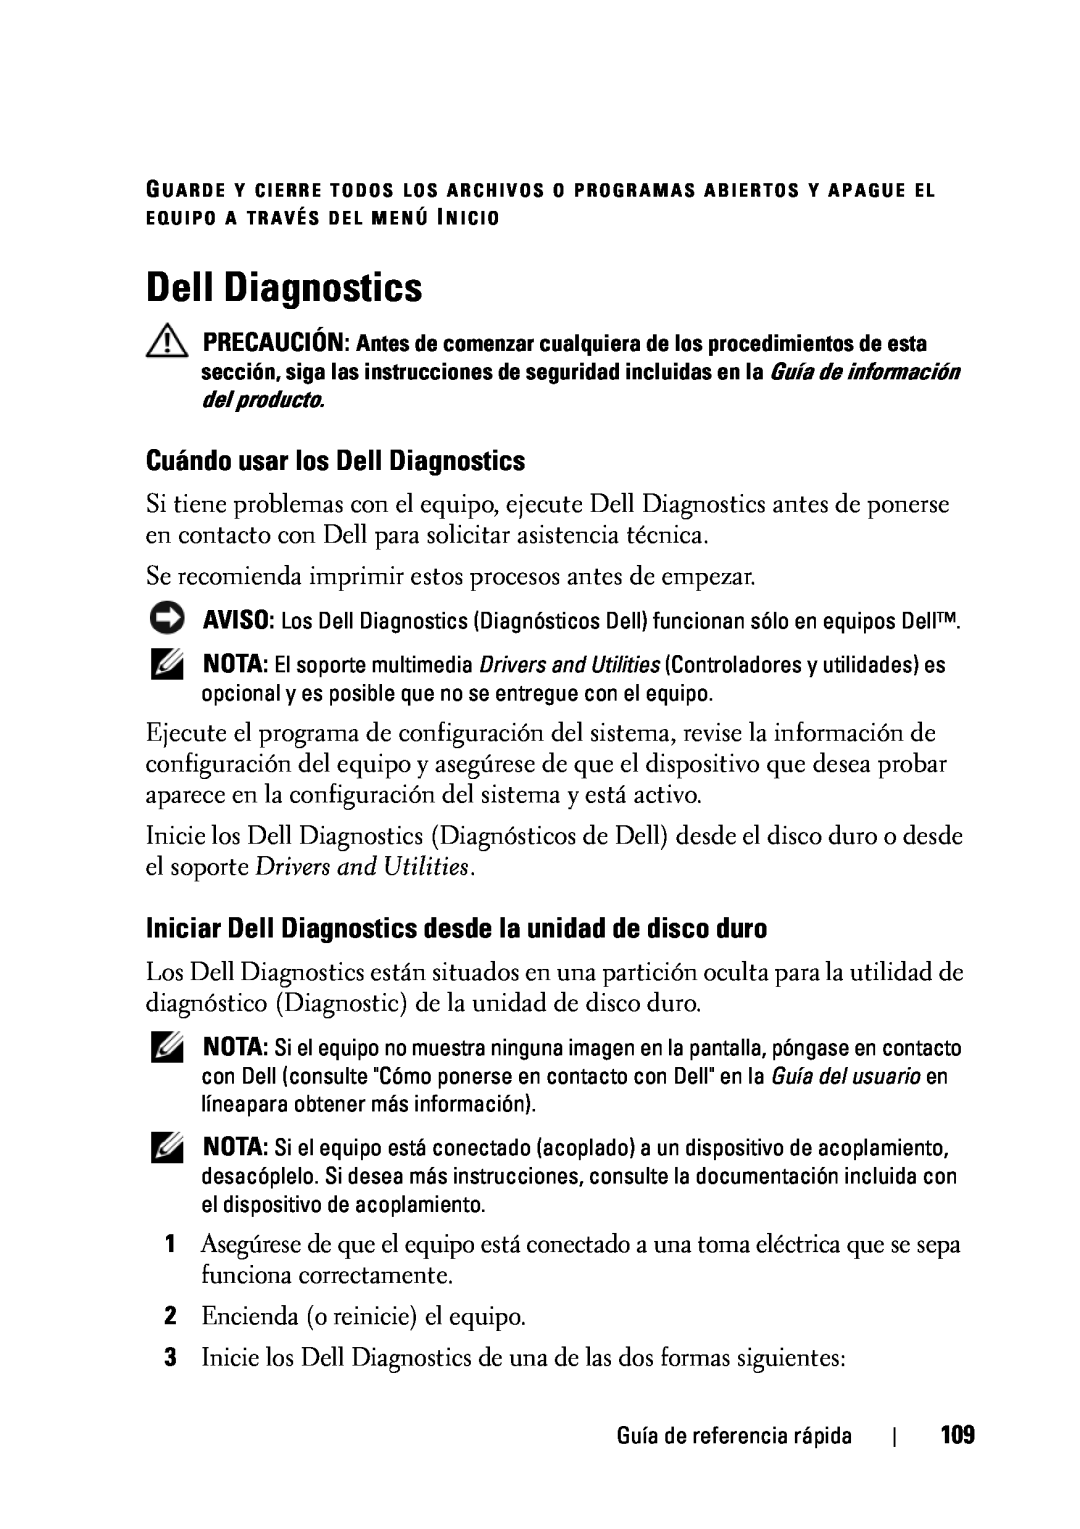 Dell D430 manual Cuándo usar los Dell Diagnostics, Iniciar Dell Diagnostics desde la unidad de disco duro 